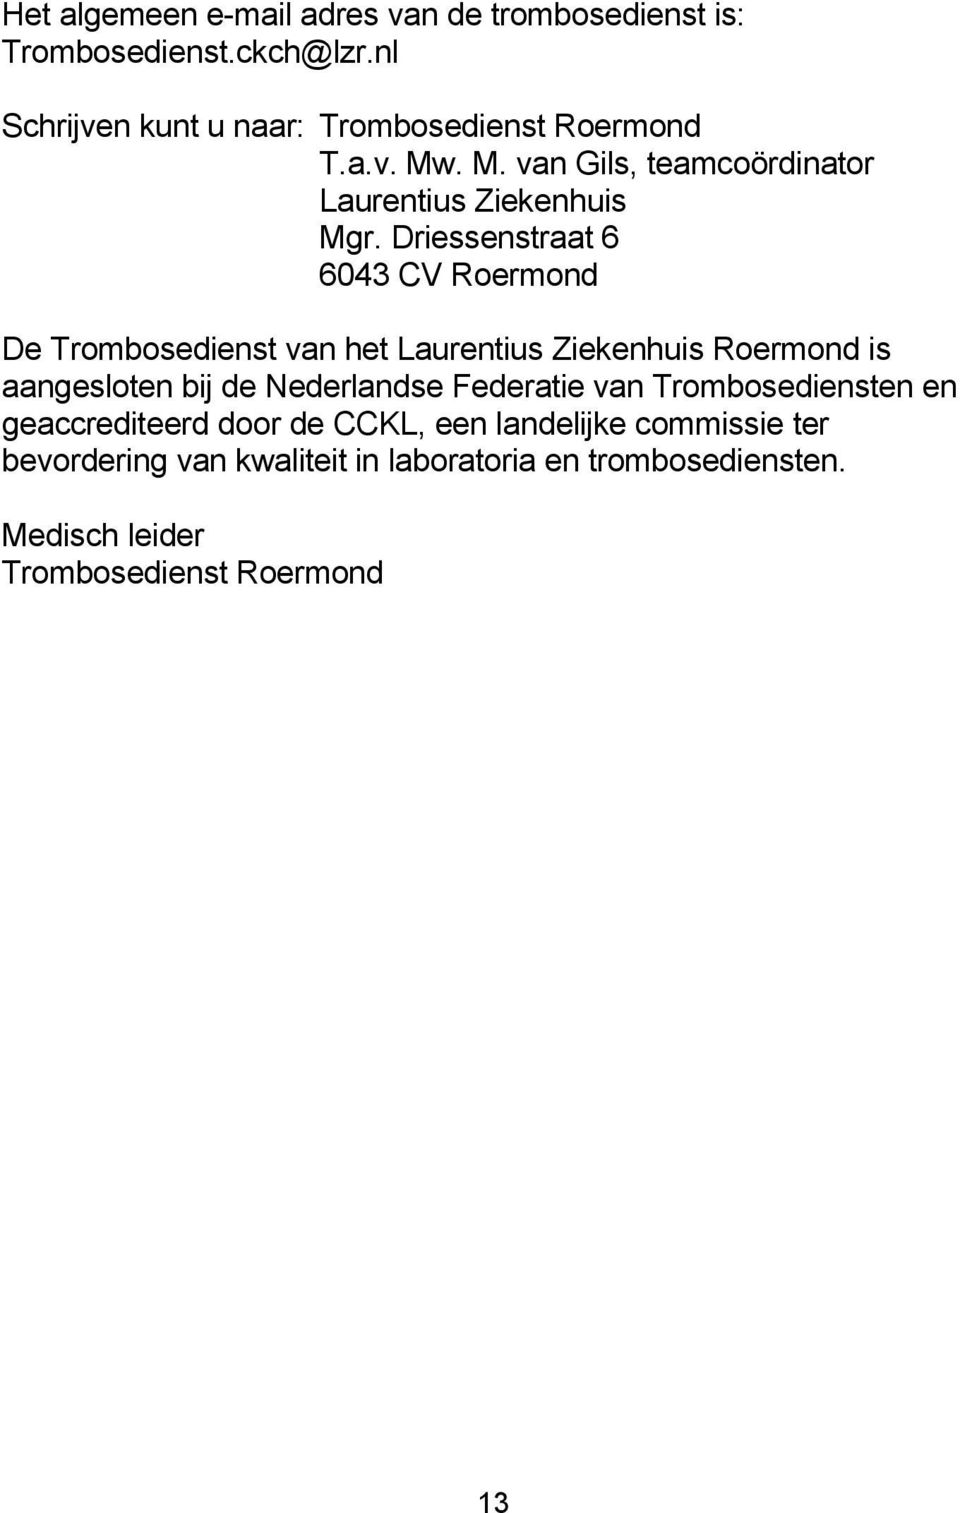 Driessenstraat 6 6043 CV Roermond De Trombosedienst van het Laurentius Ziekenhuis Roermond is aangesloten bij de Nederlandse